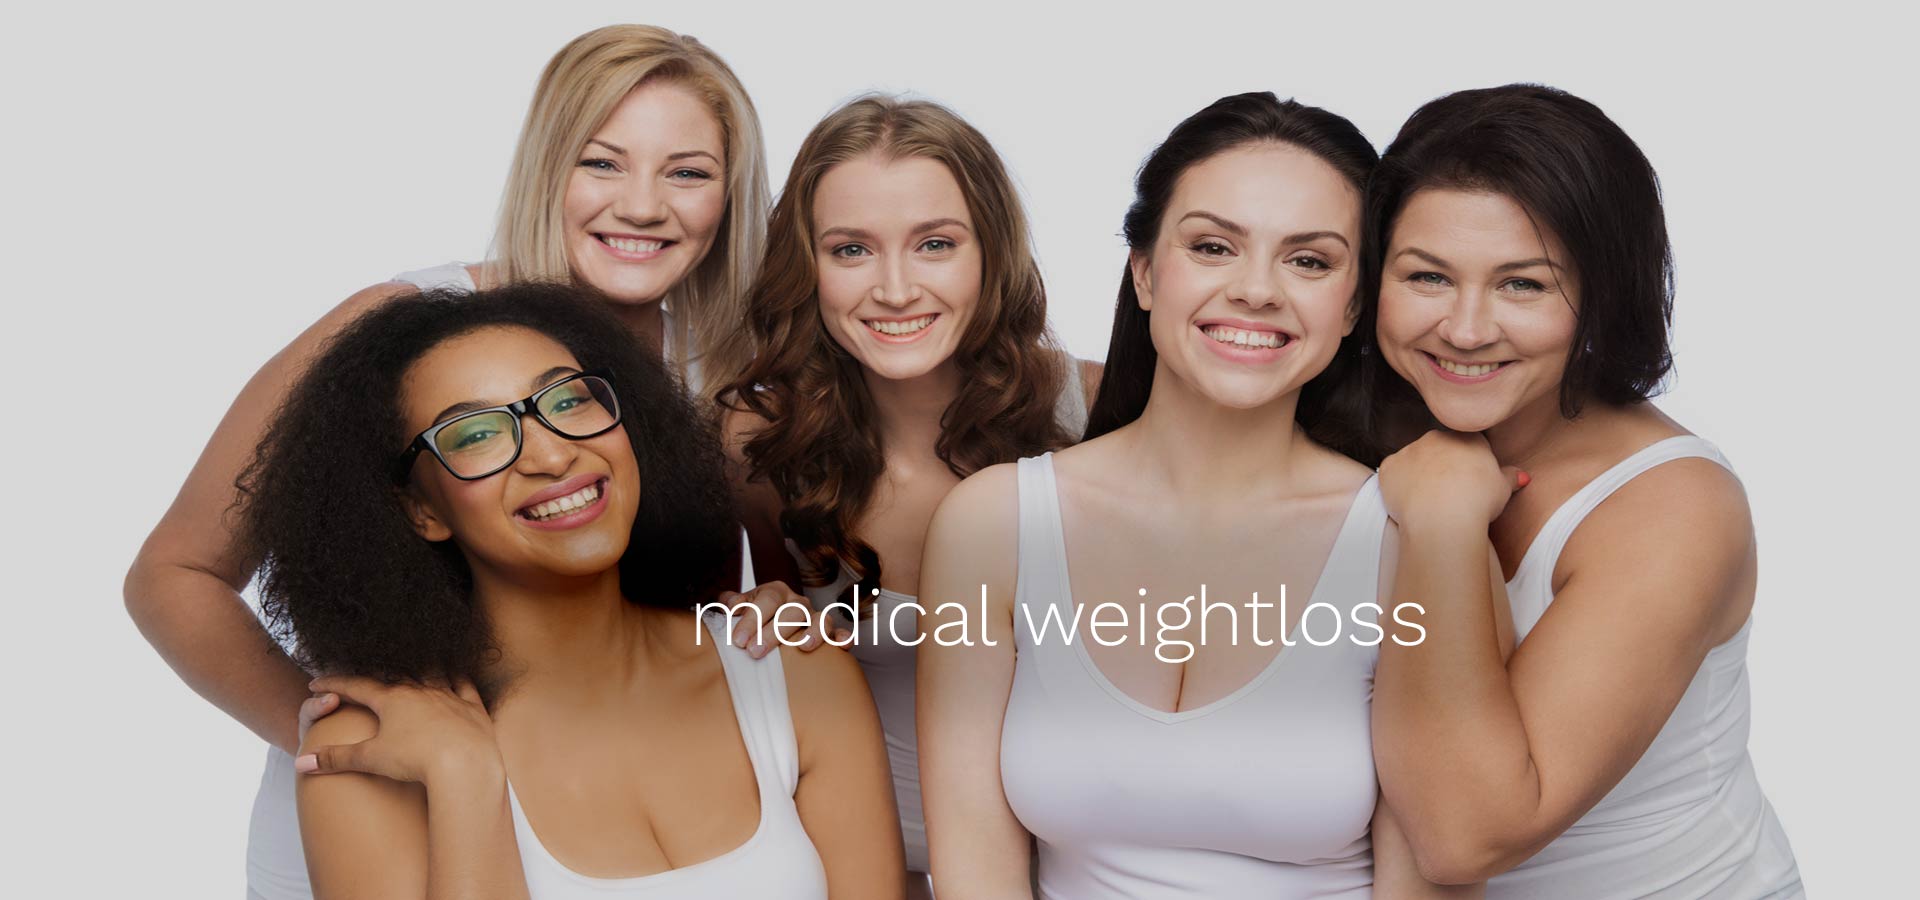 Medical Weightloss Rochester Hills